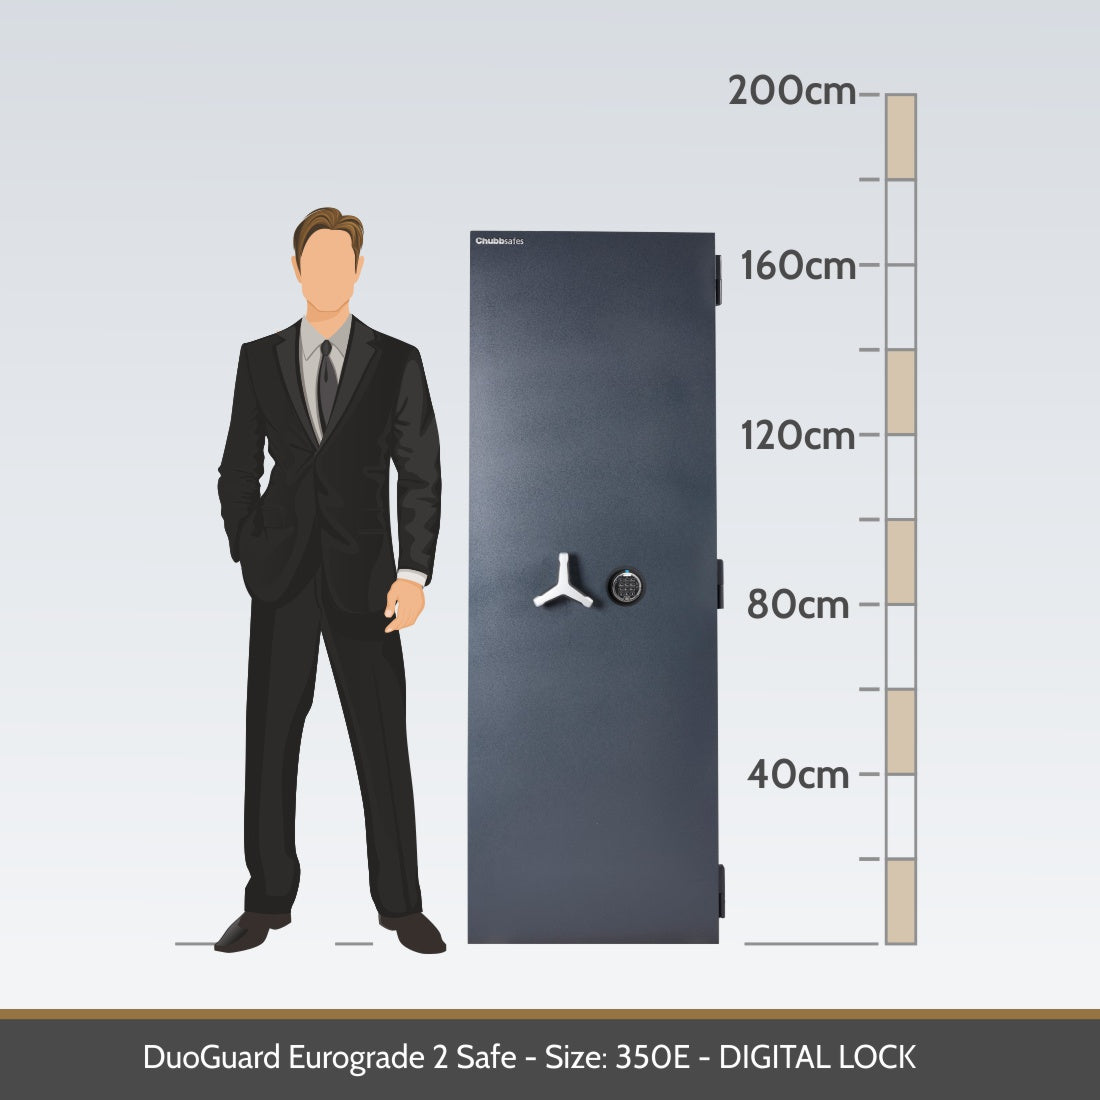 DuoGuard Eurograde 2 Safe Size 350E Digital Lock